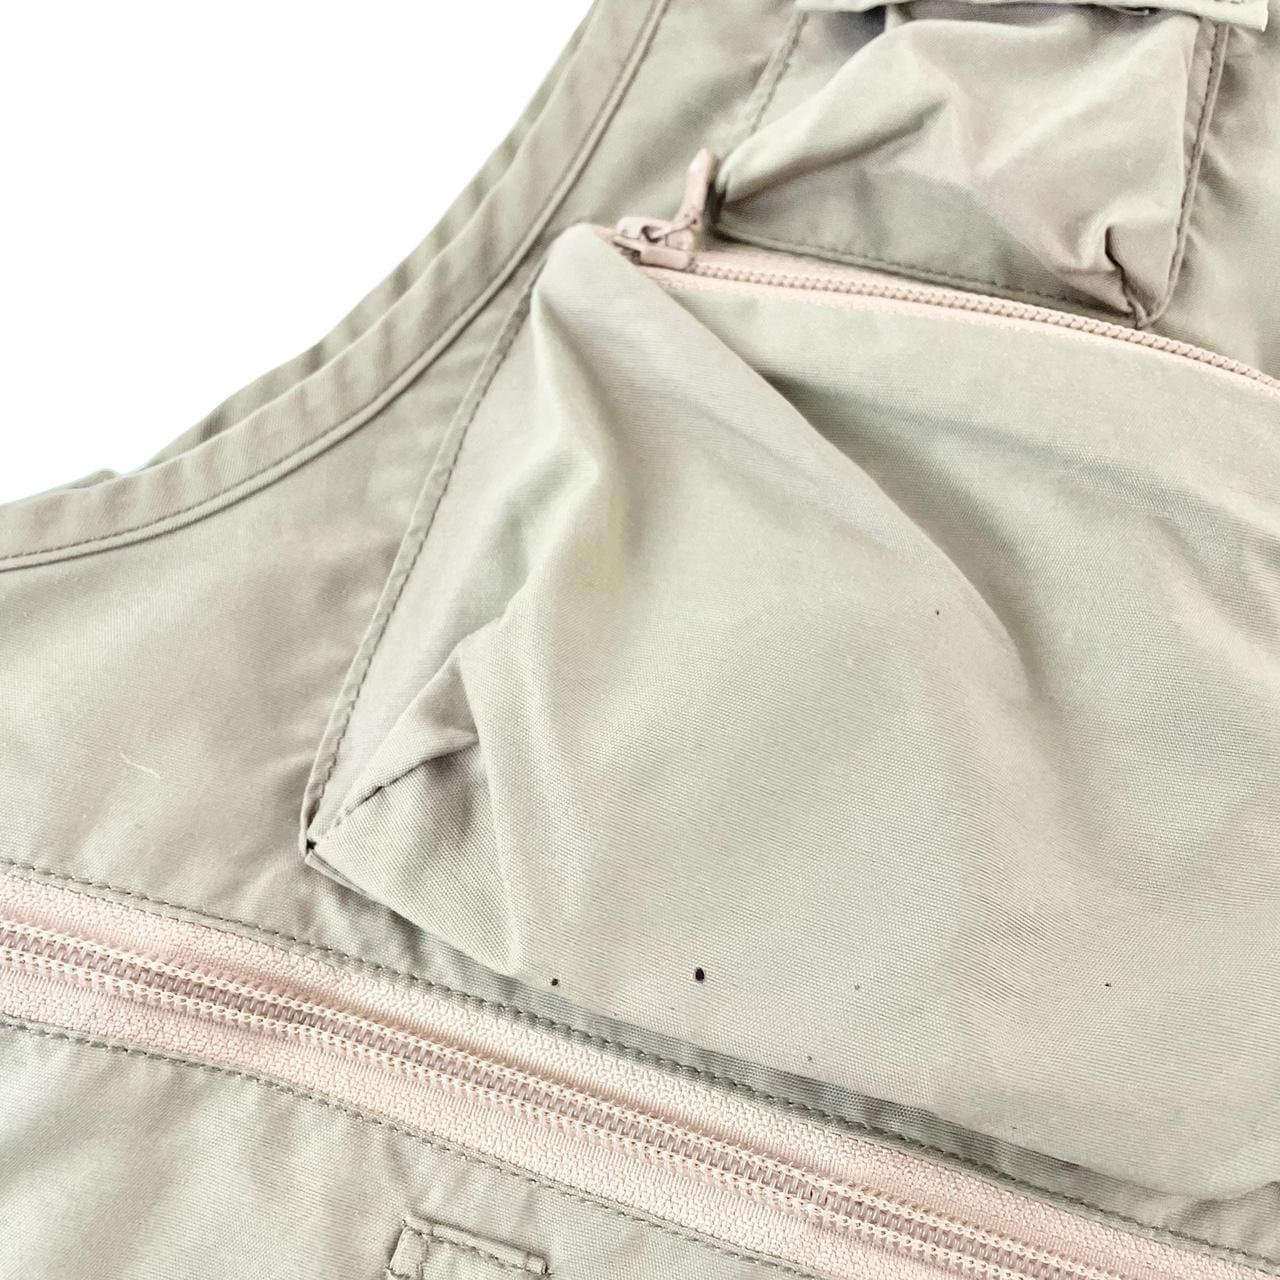 Vintage Montbell pocket tactical vest size S - Known Source